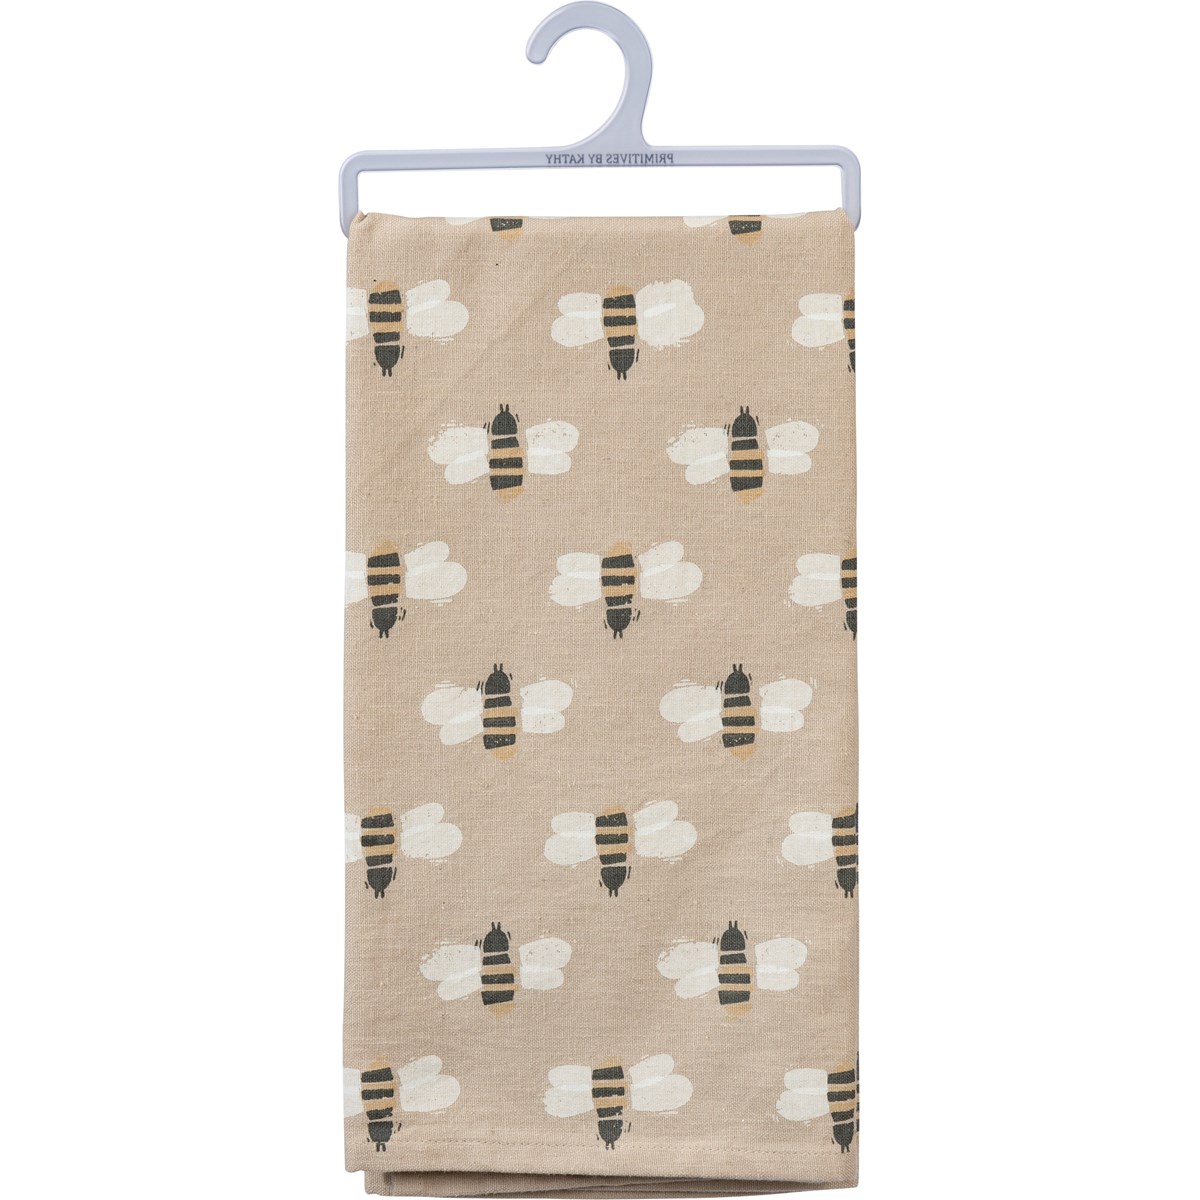 Block Print Bee Happy Kitchen Towel - Cotton, Linen